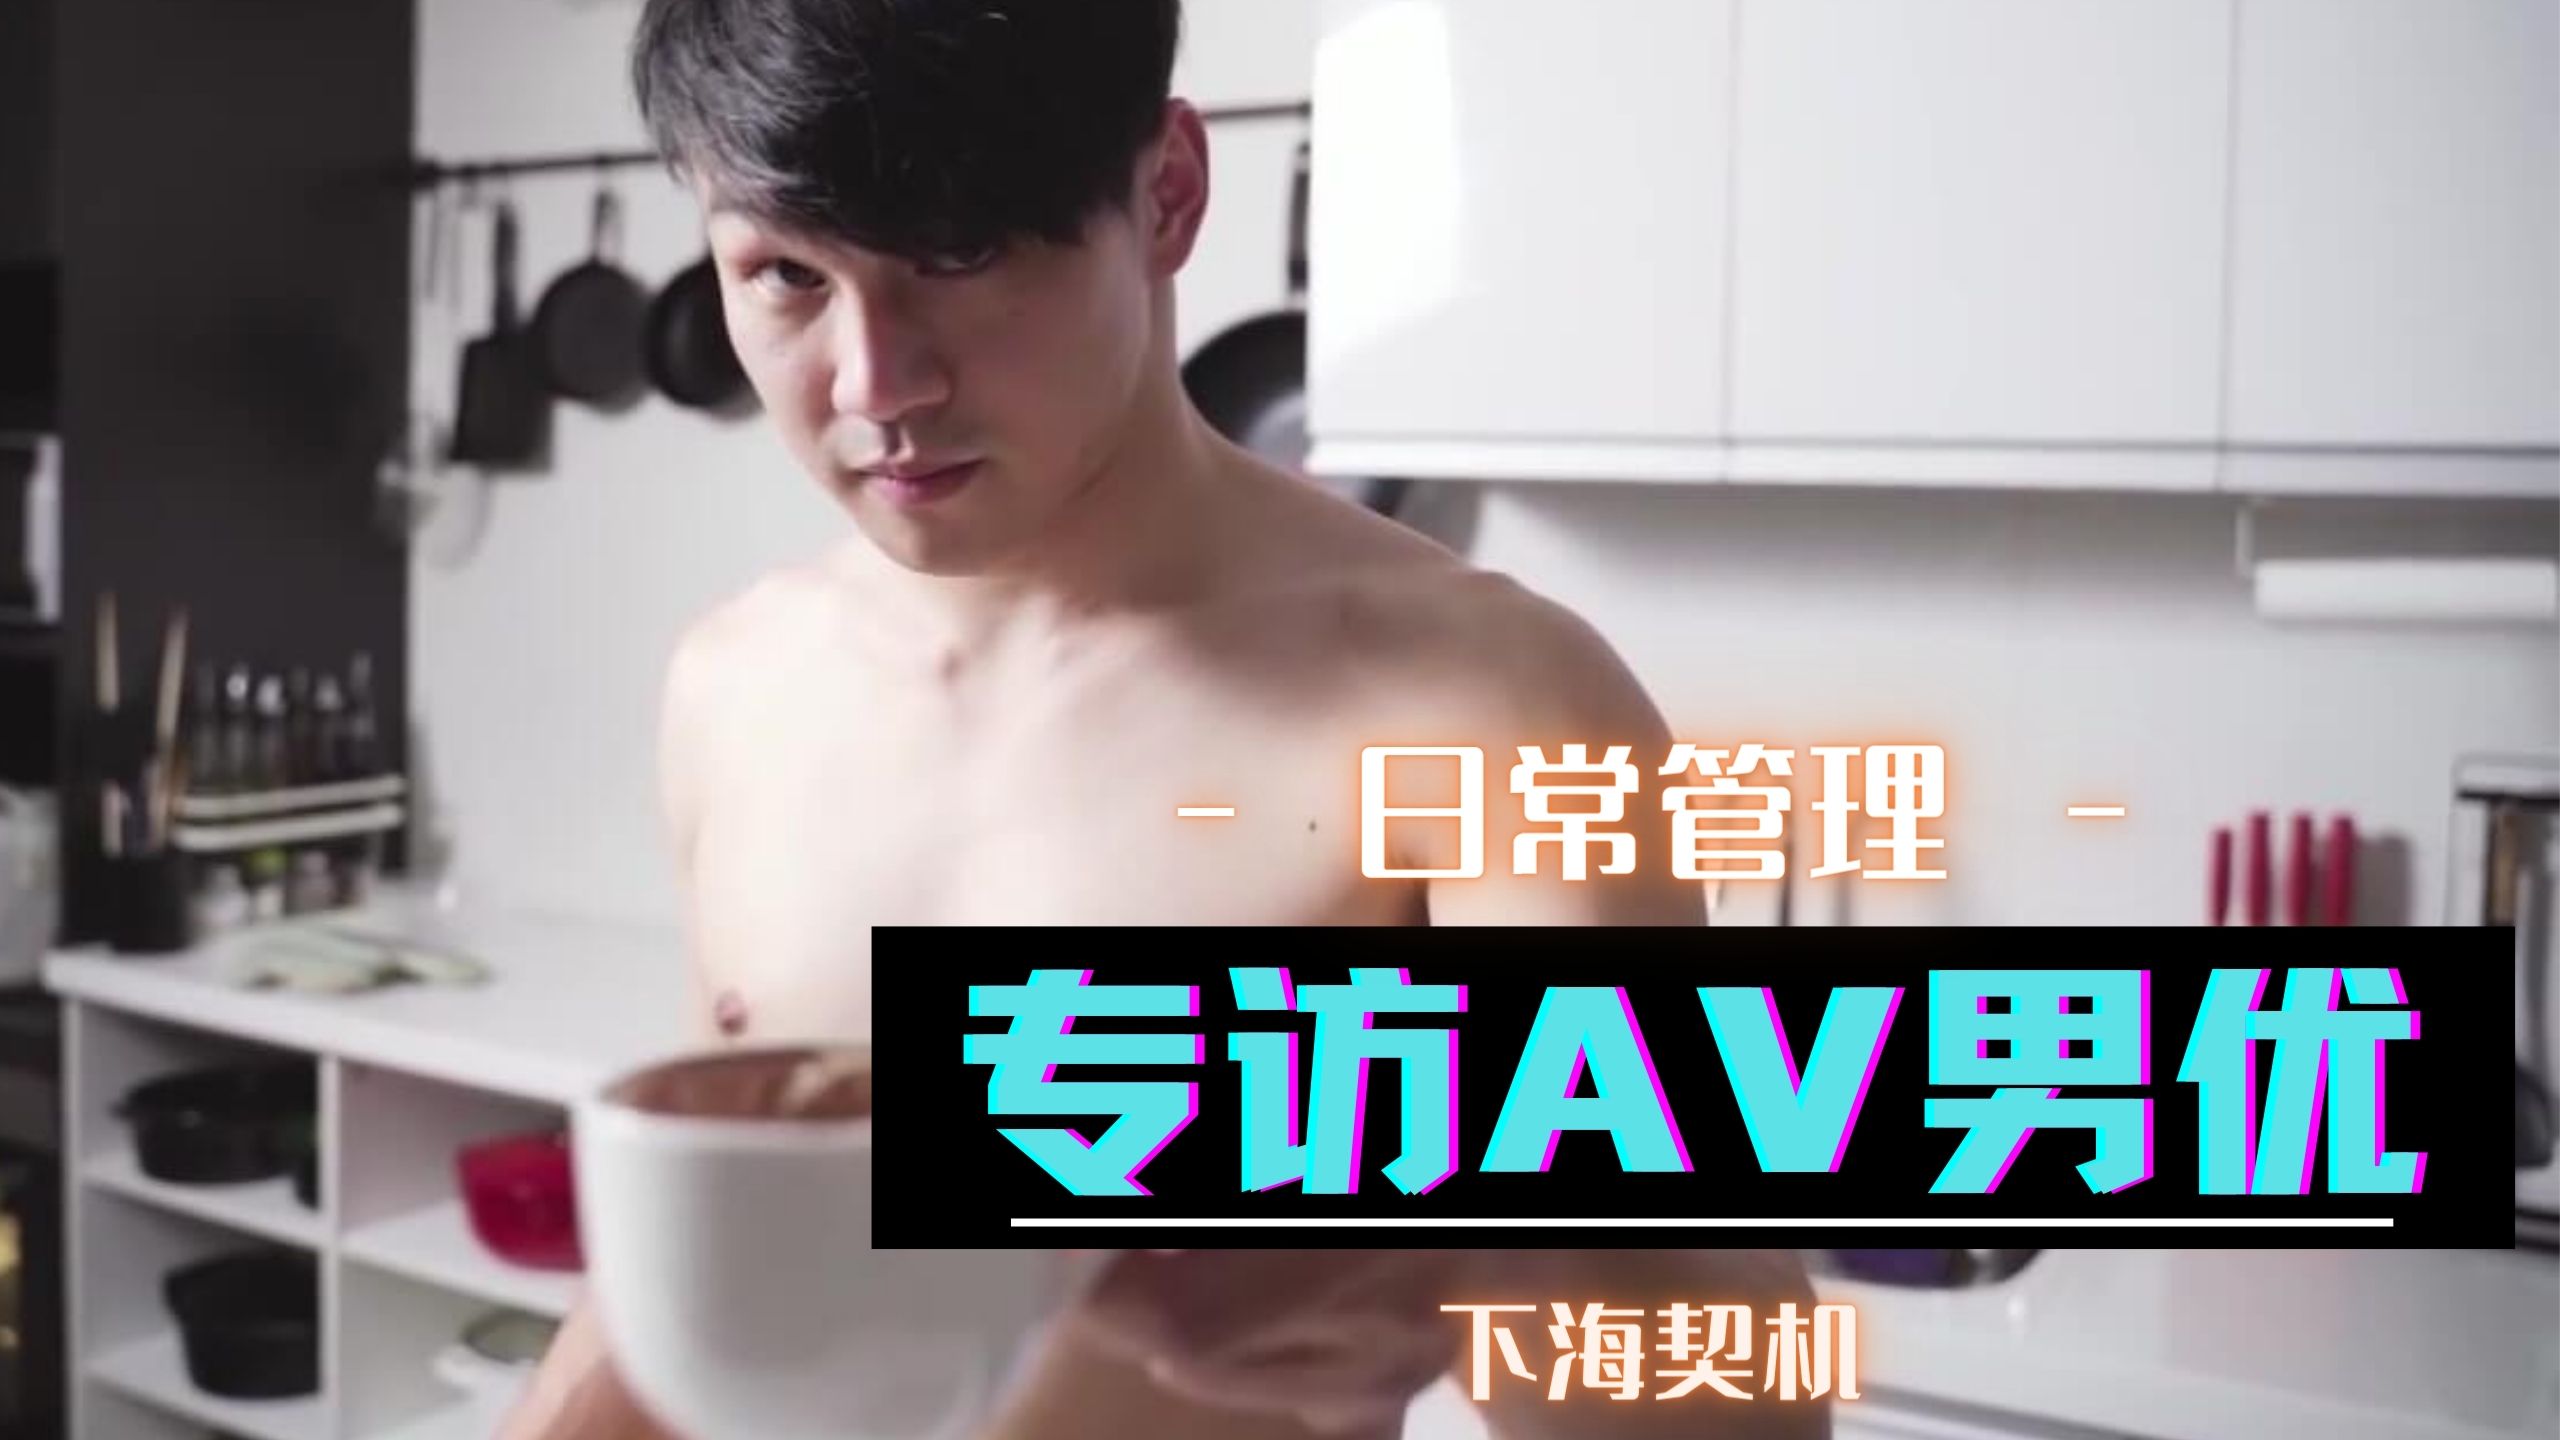 台湾气质正妹性爱影片流出-siw